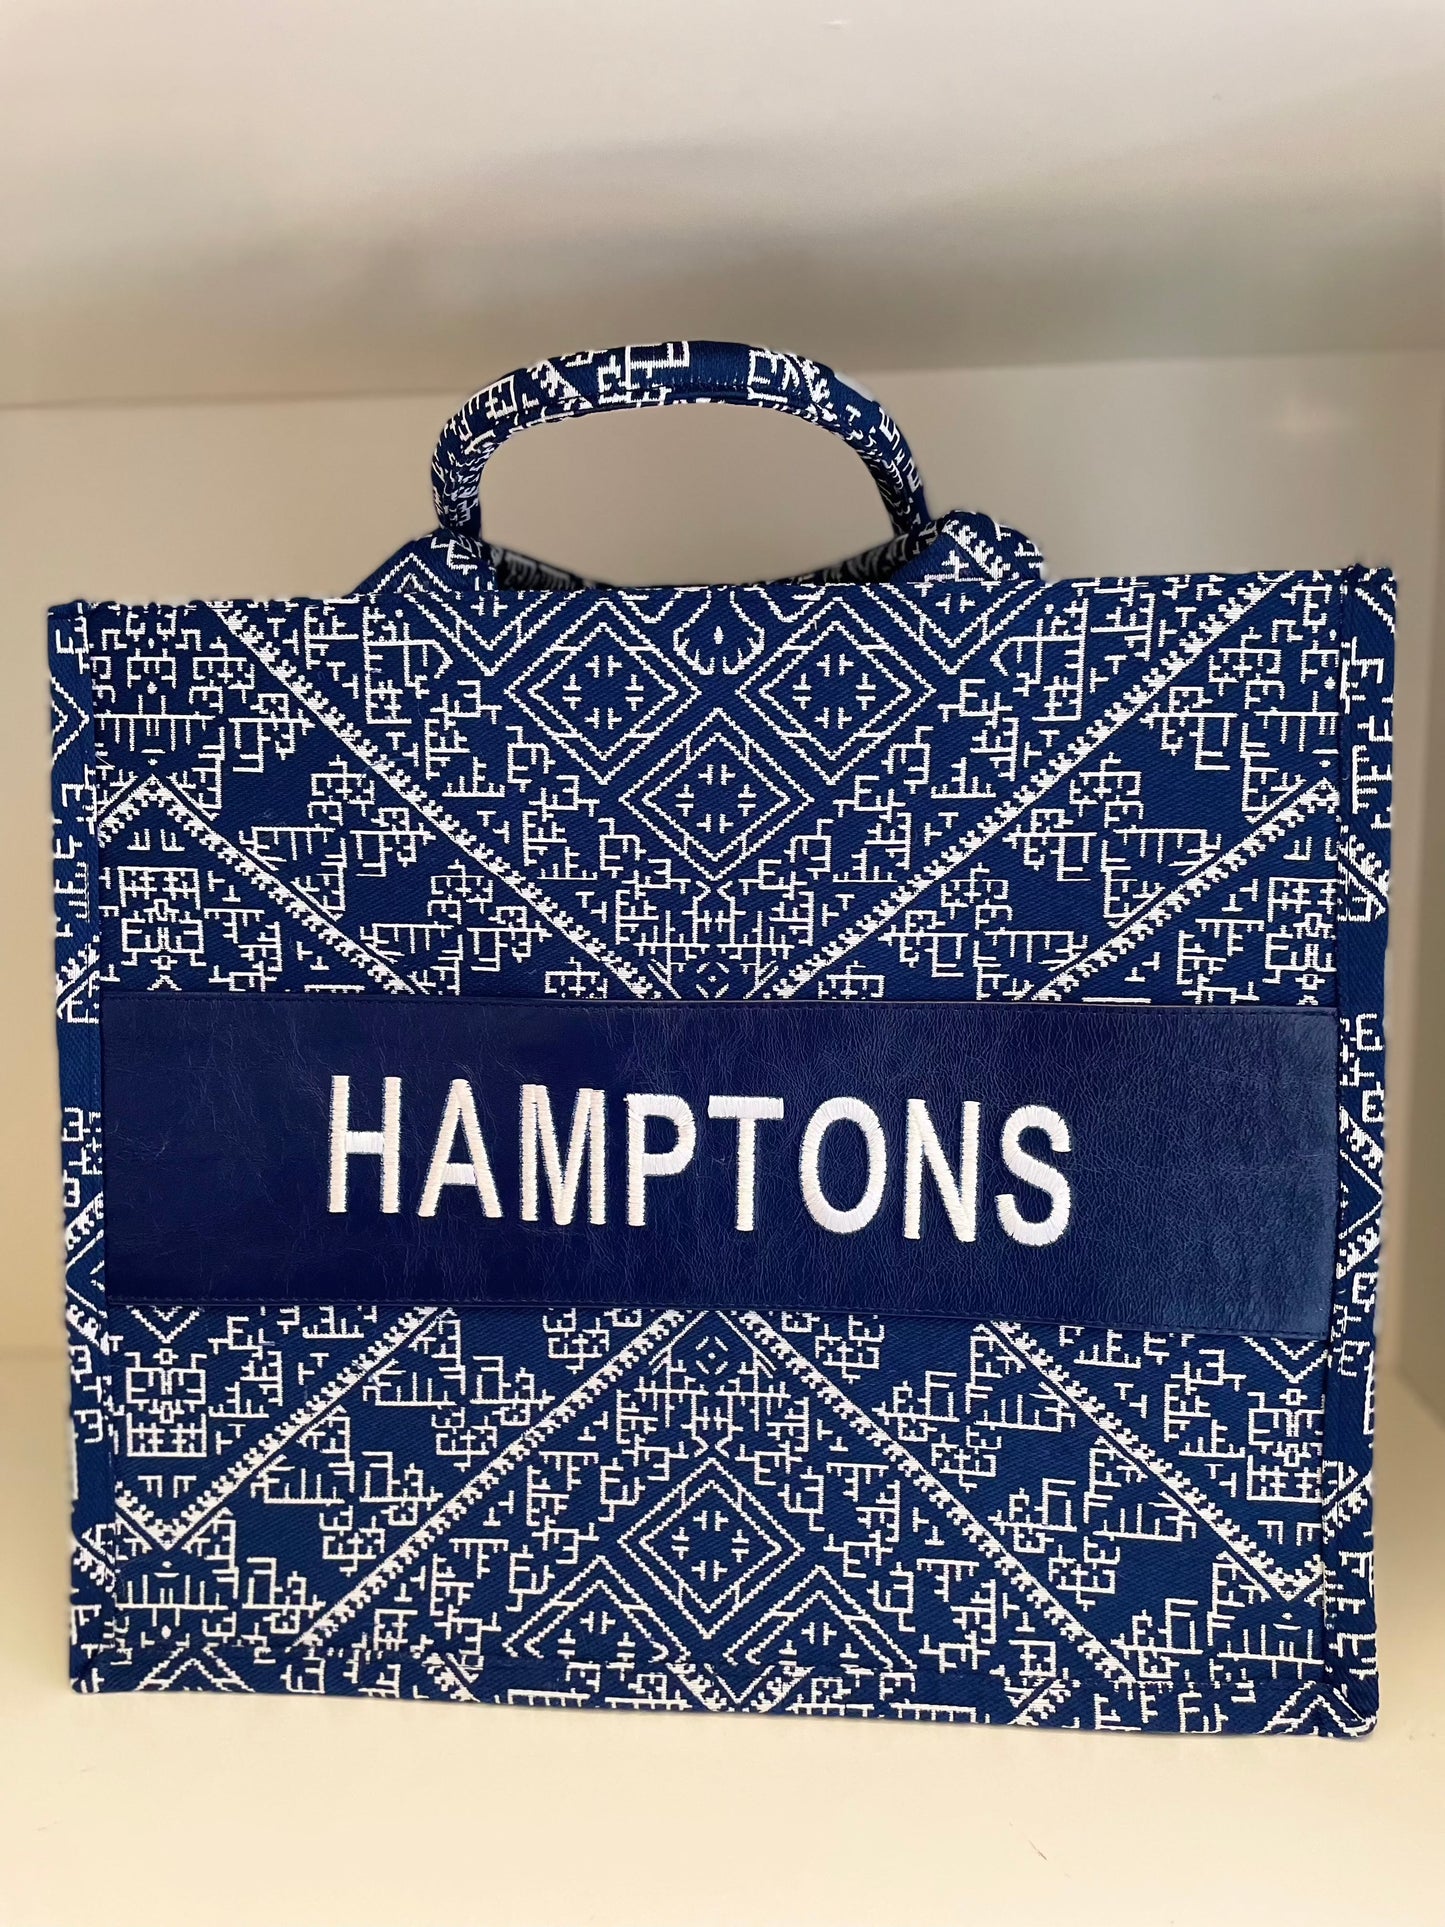 Small Tote CD Hamptons - Premium Bag from Marina St. Barth - Just $350.00! Shop now at Marina St Barth